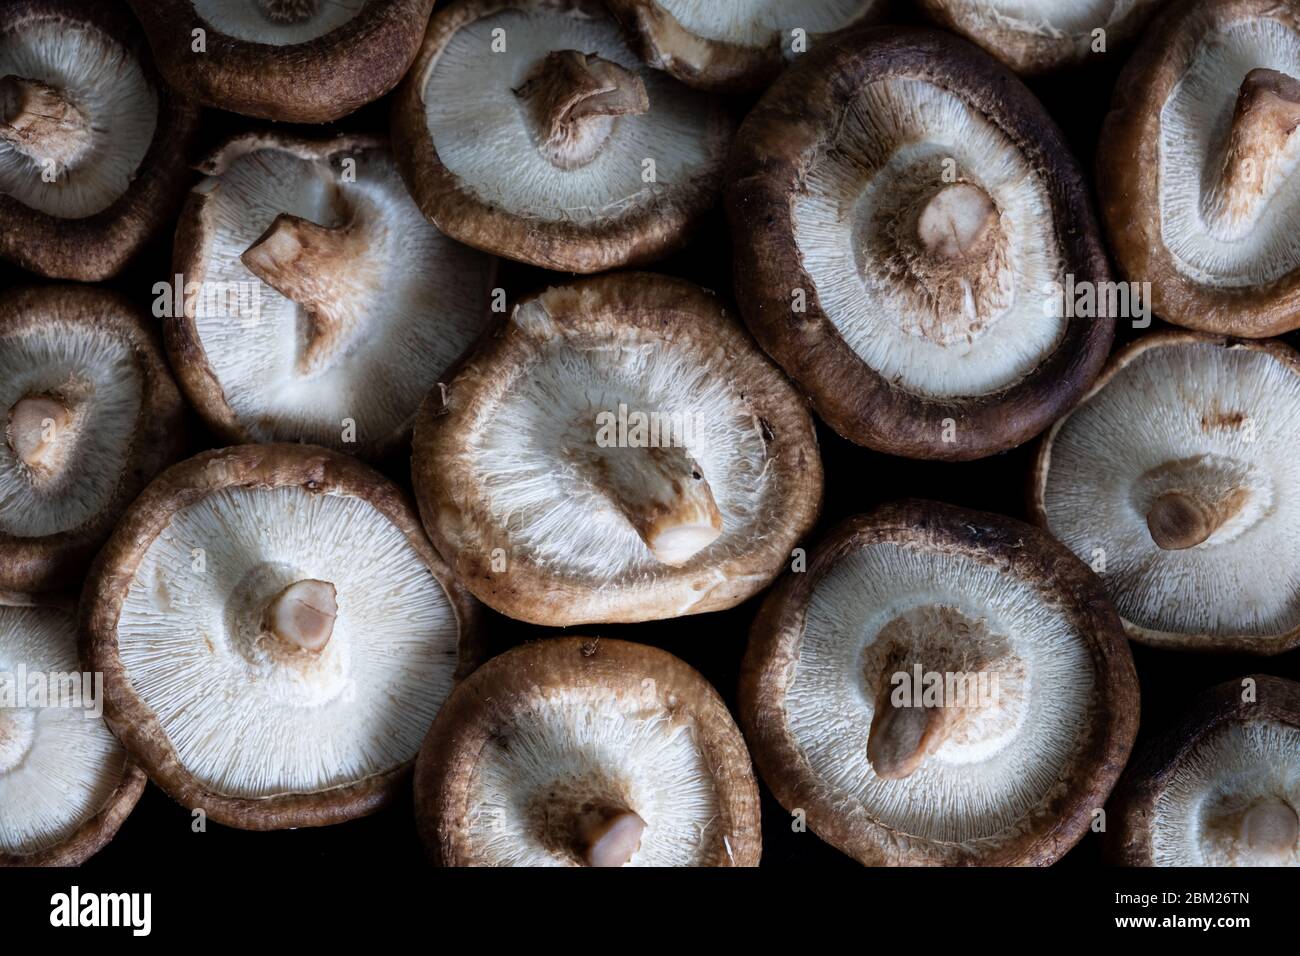 dettaglio gruppo di funghi shiitake Foto Stock